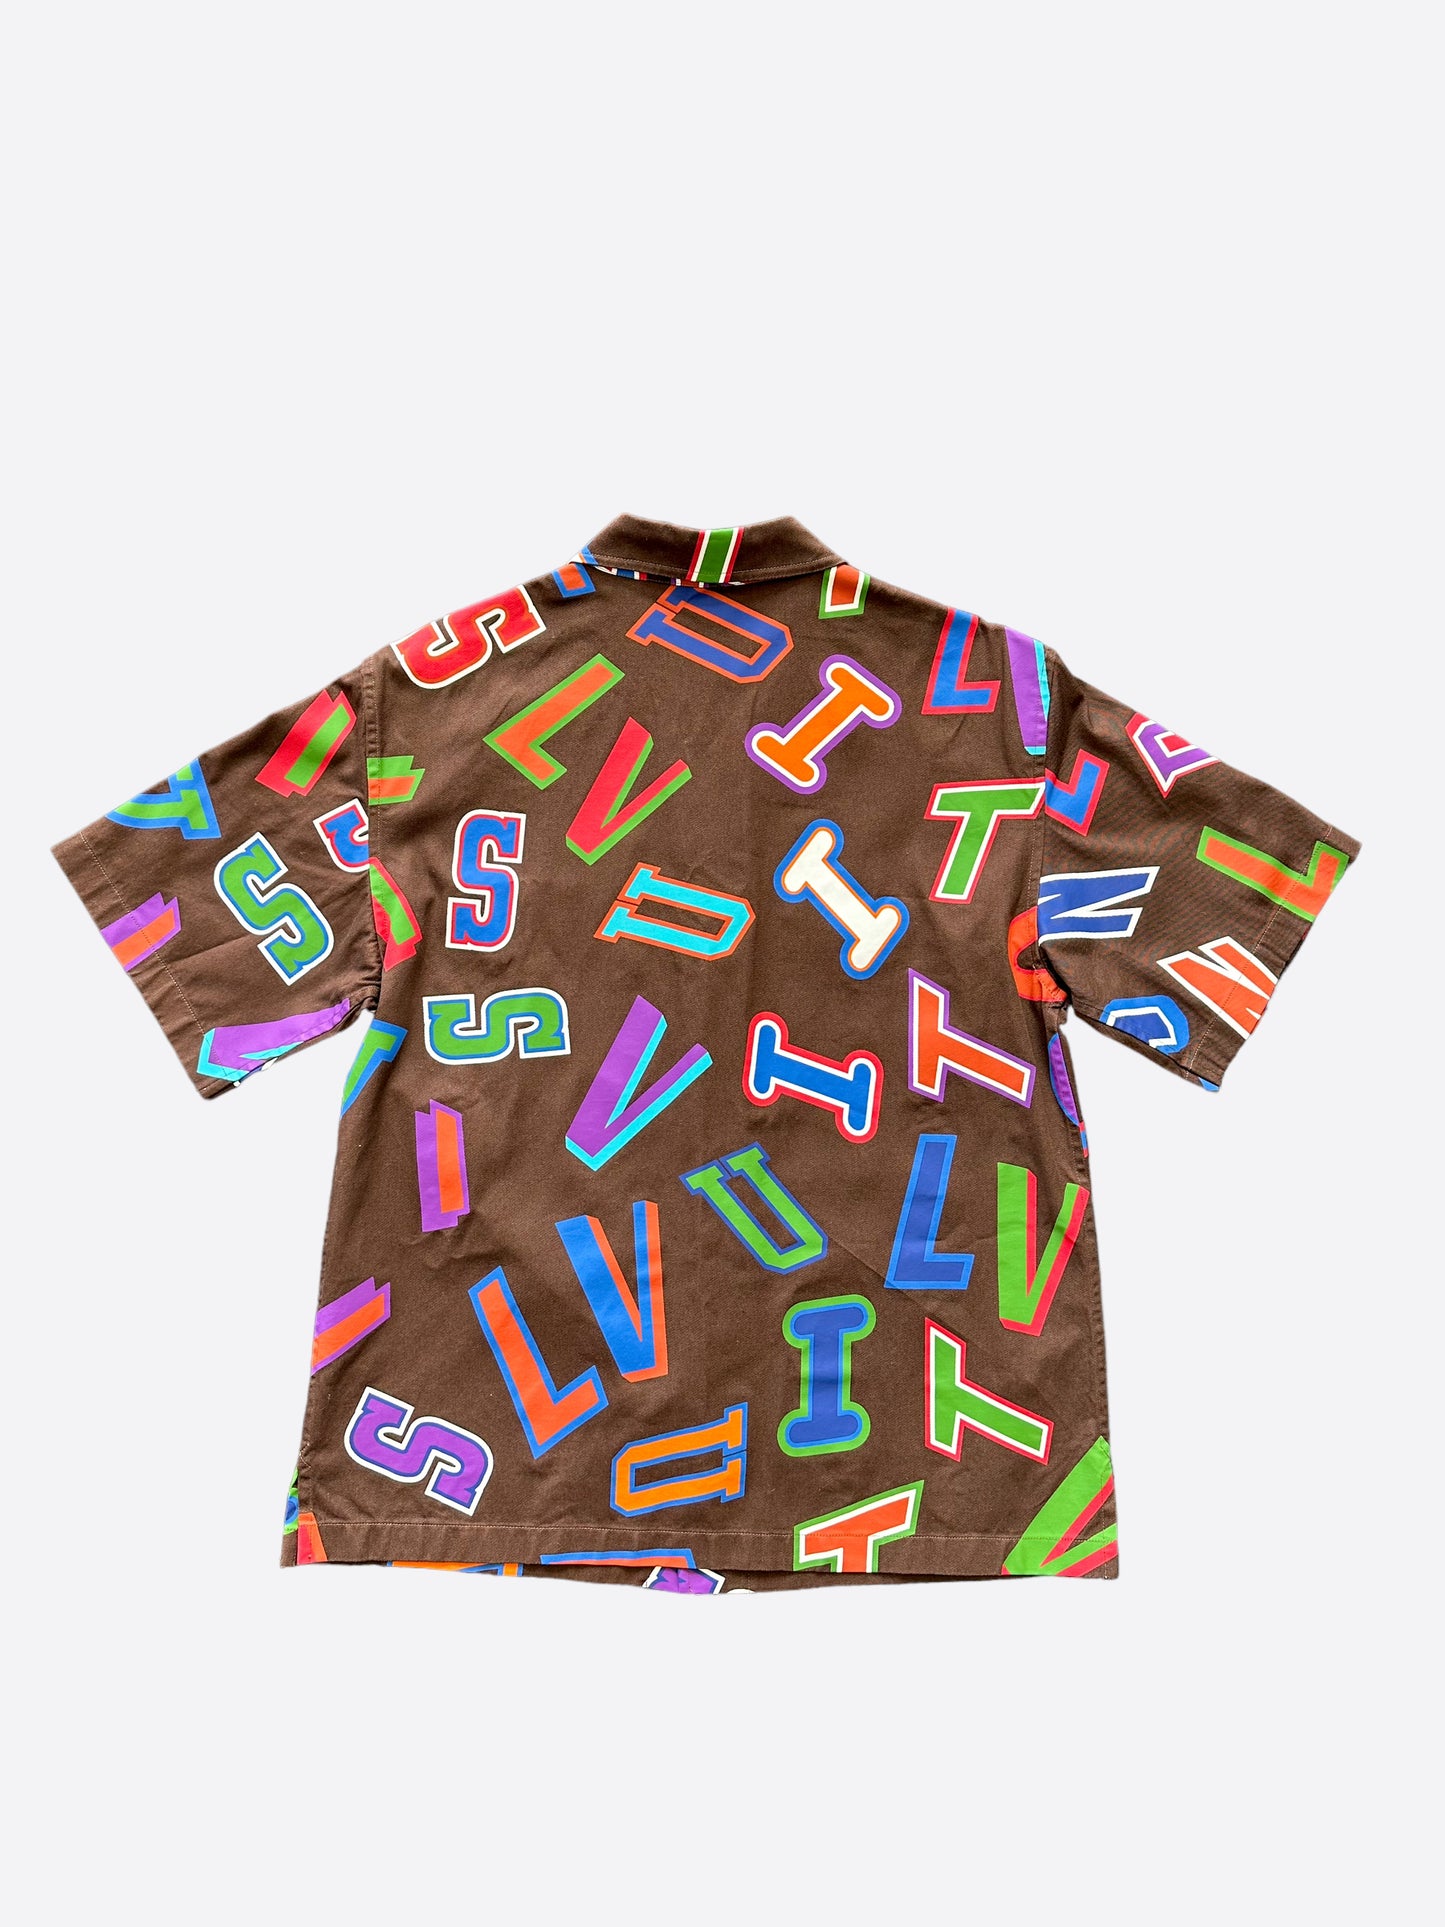 LOUIS VUITTON T-shirt short sleeve multicolor Size M